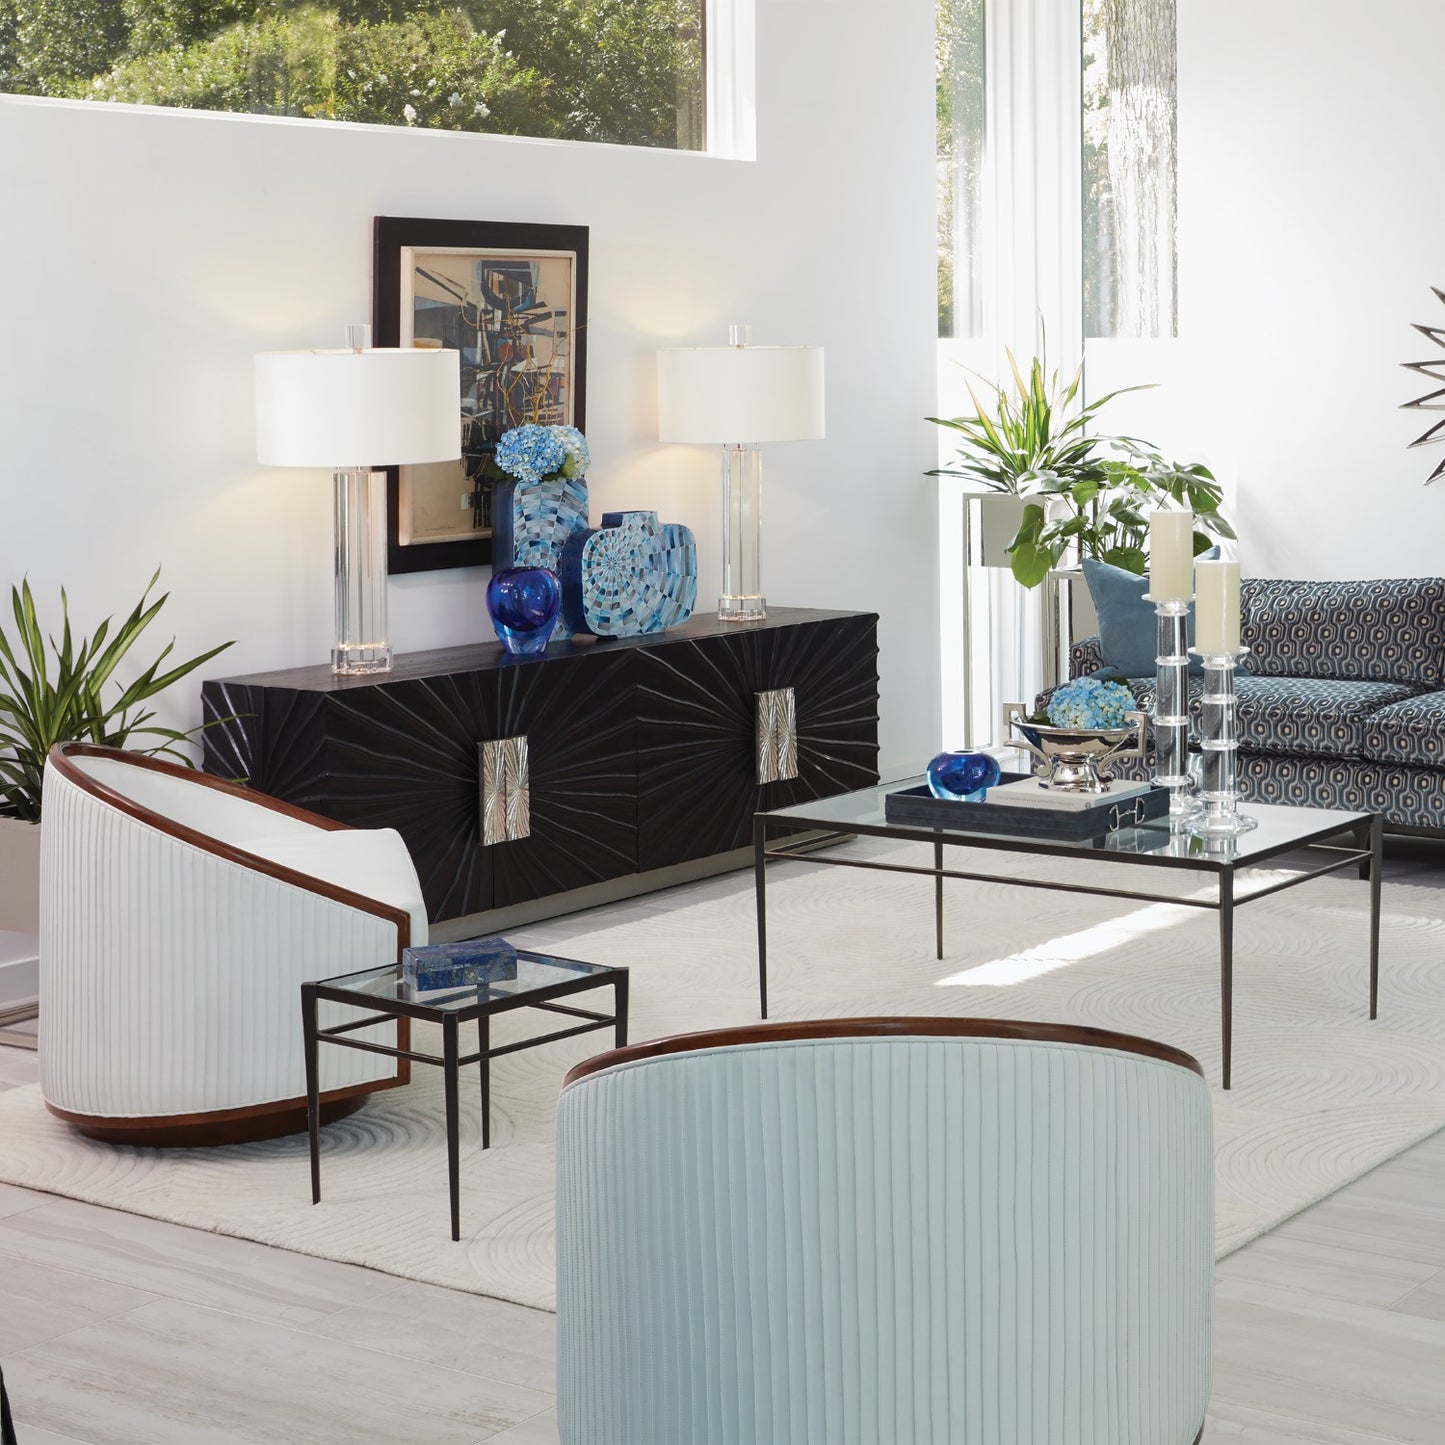 Swivel Chair - White Leather - Grats Decor Interior Design & Build Inc.